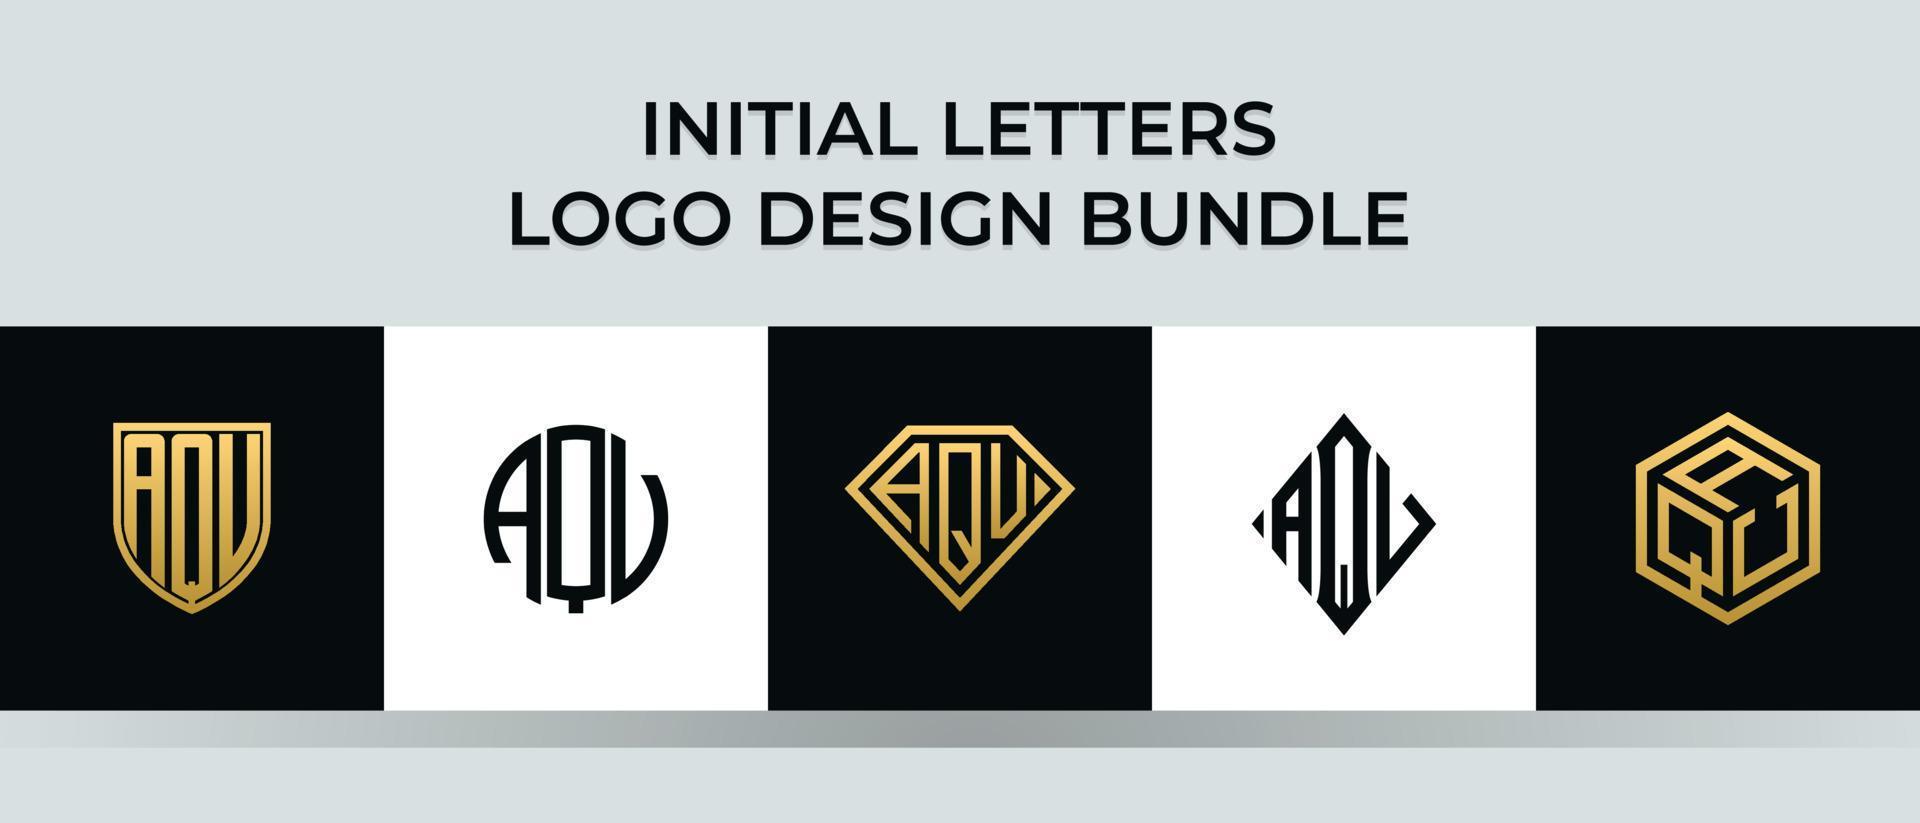 lettere iniziali aqv logo design bundle vettore